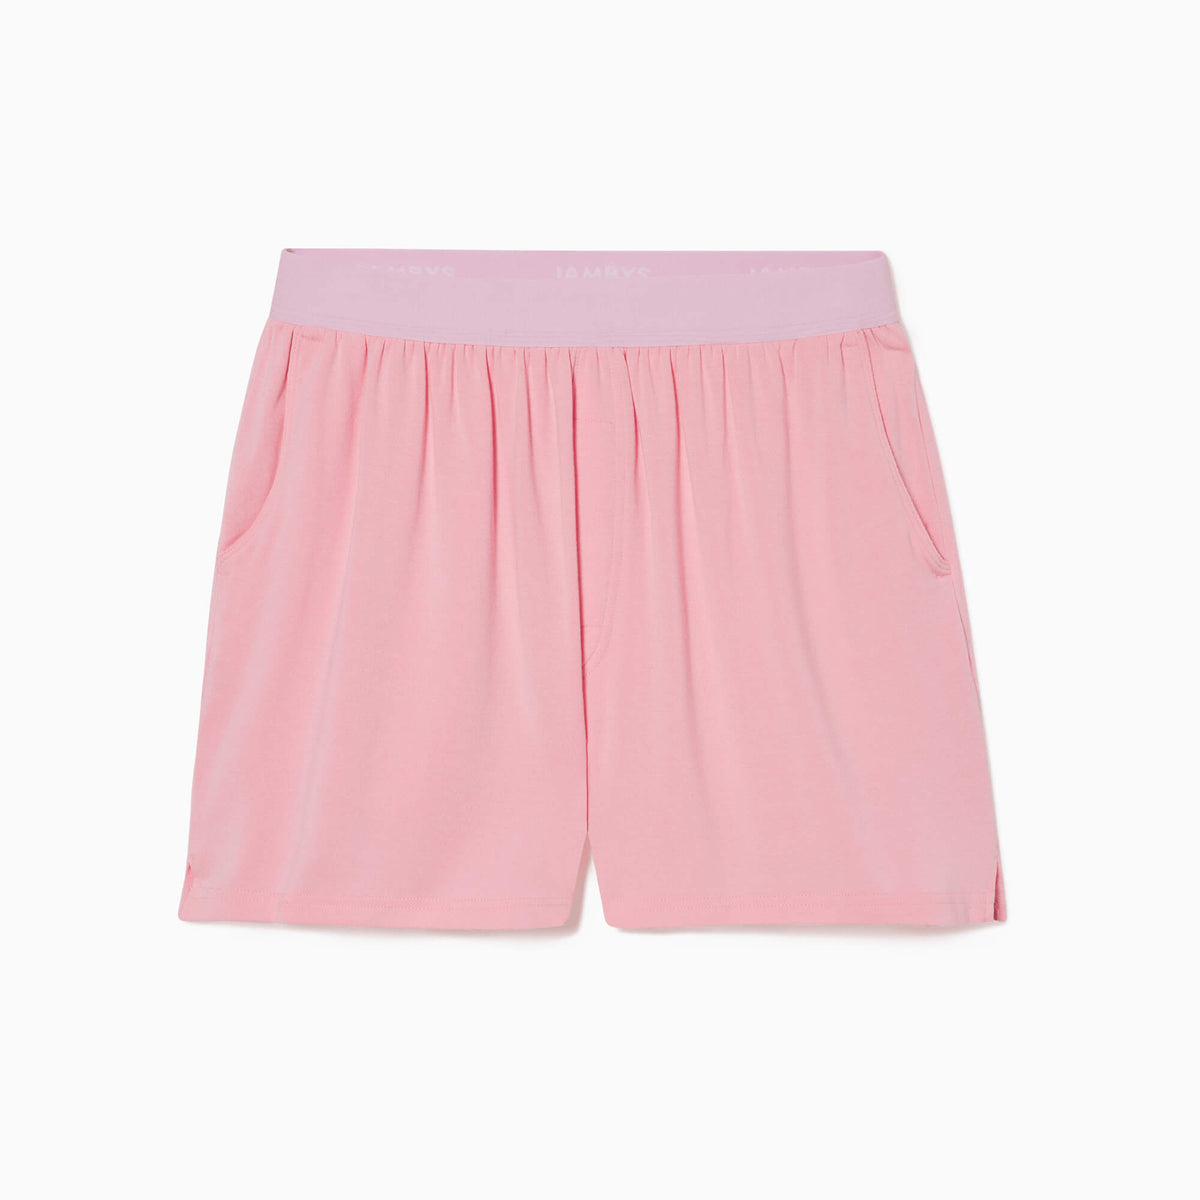 Boxers With Pockets | House Shorts | Jambys | Flamingo/Taffy